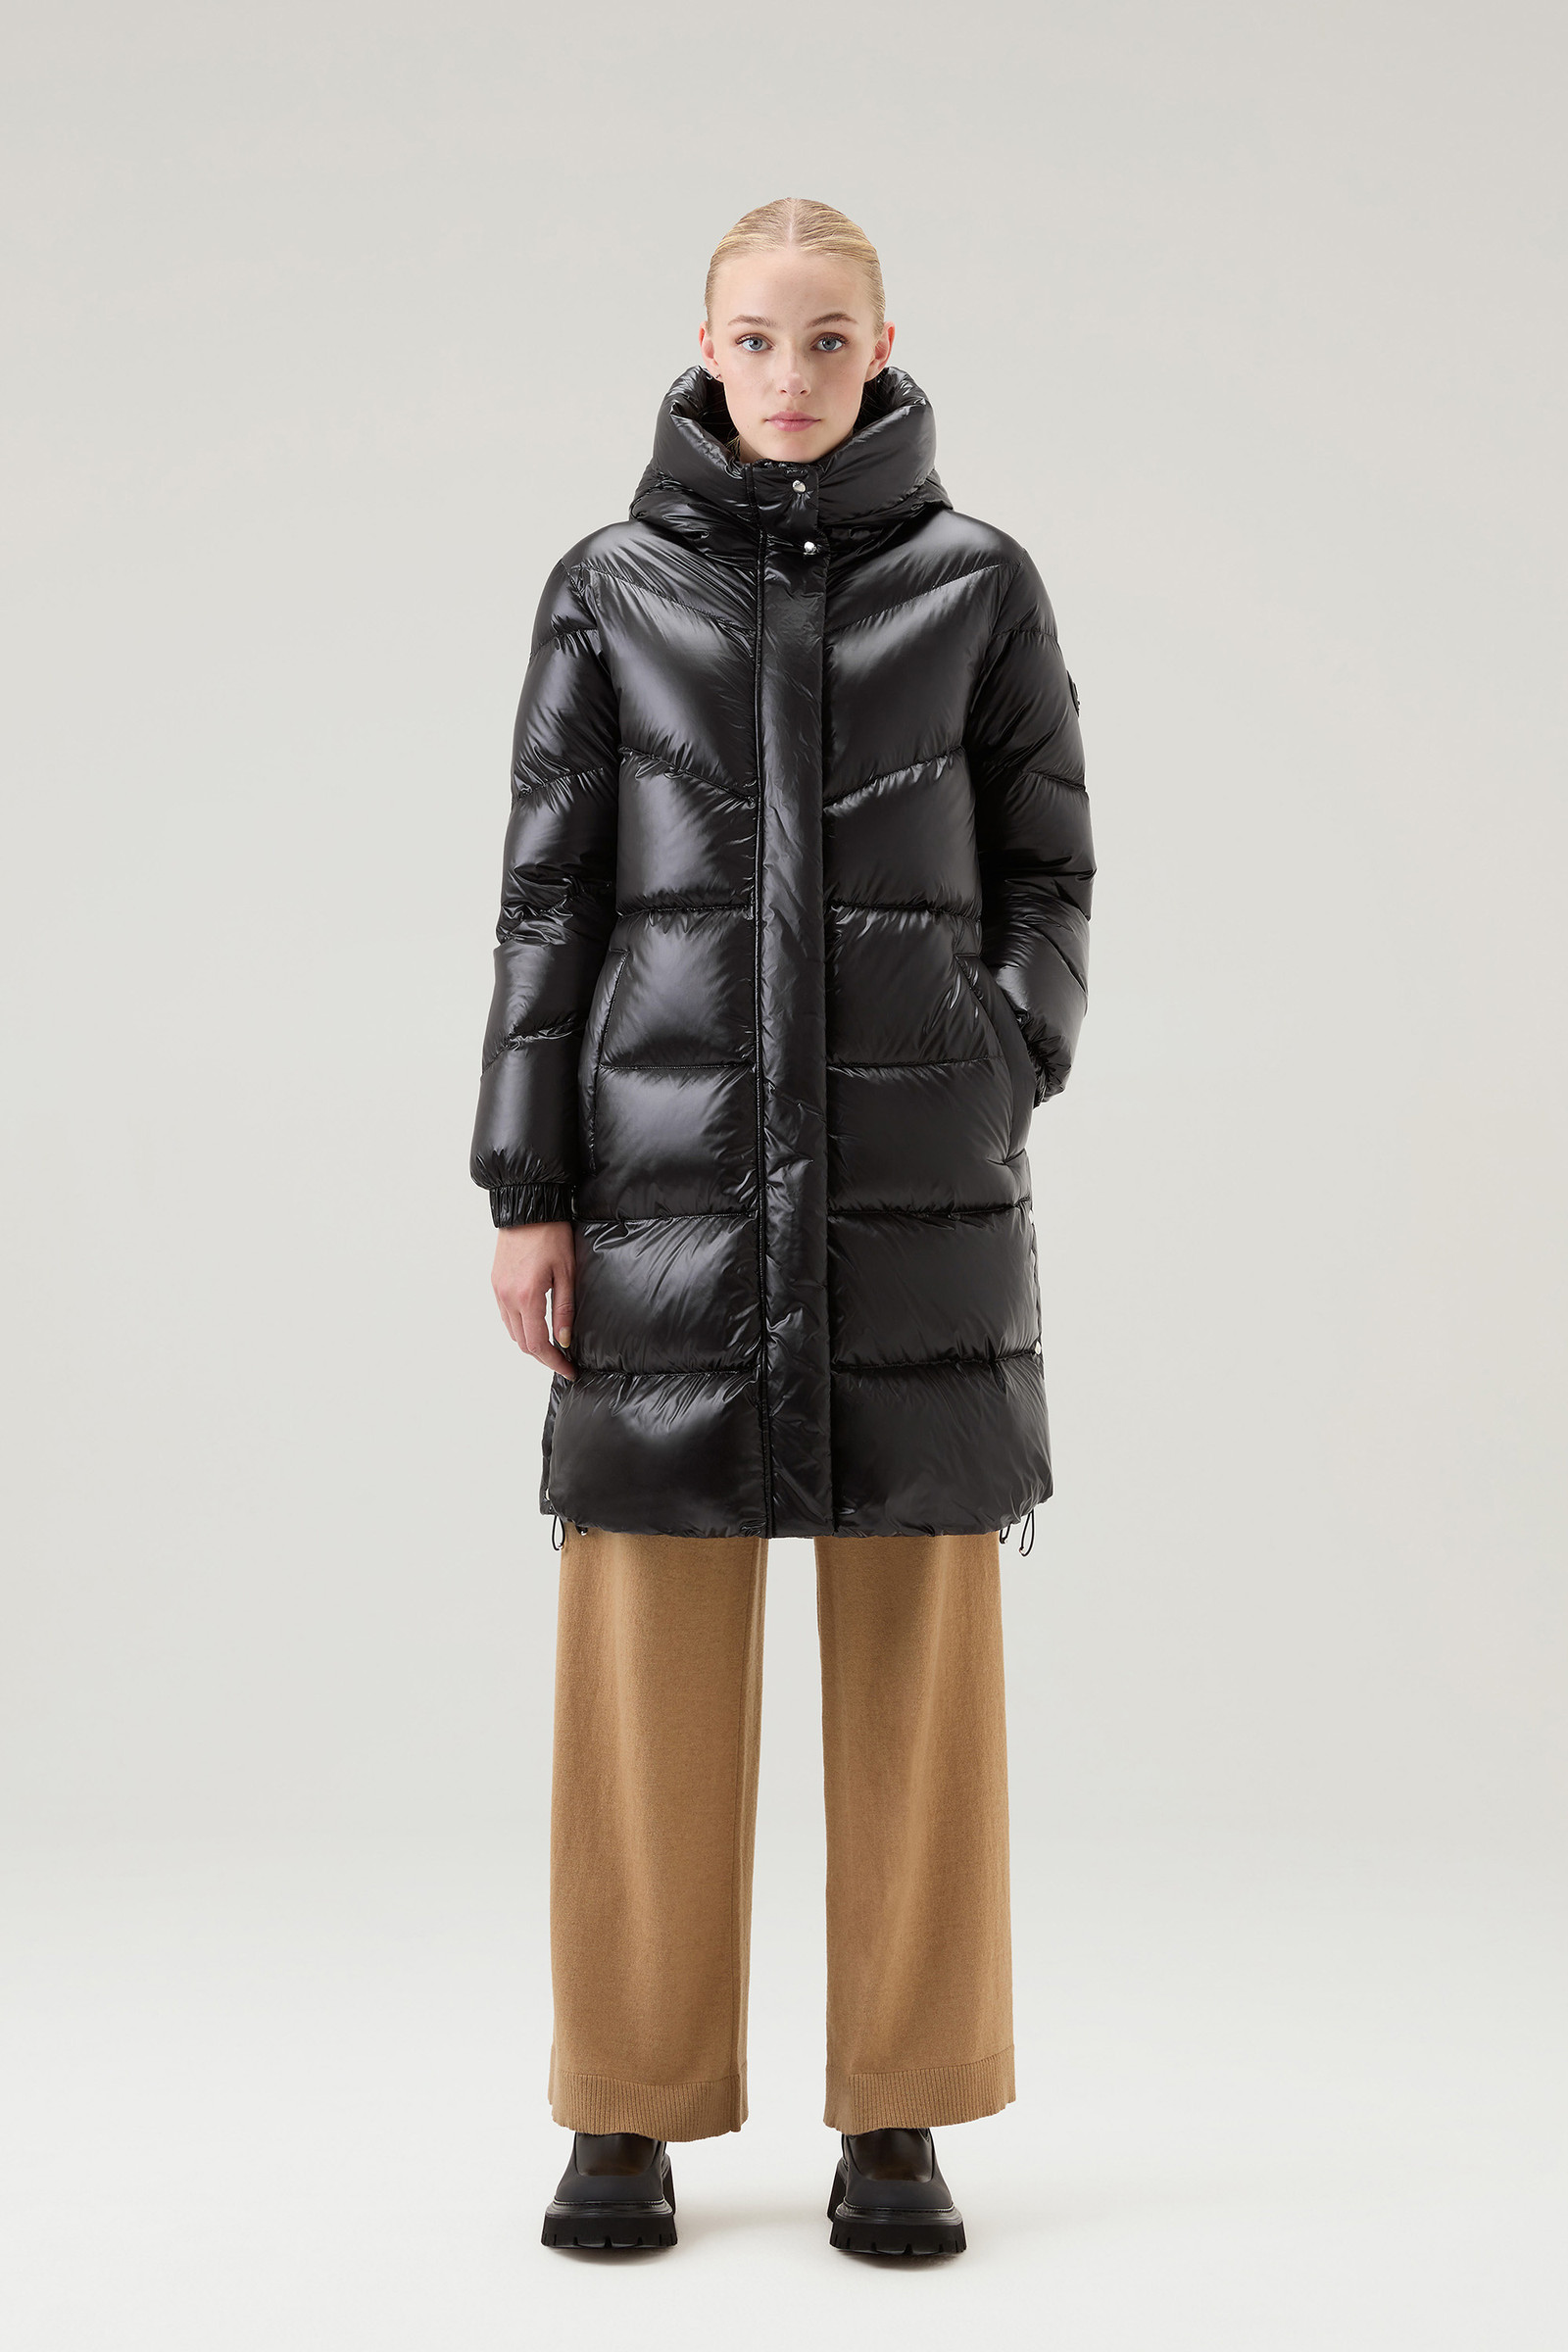 Aliquippa Long Down Jacket in Glossy Nylon Black | Woolrich UK